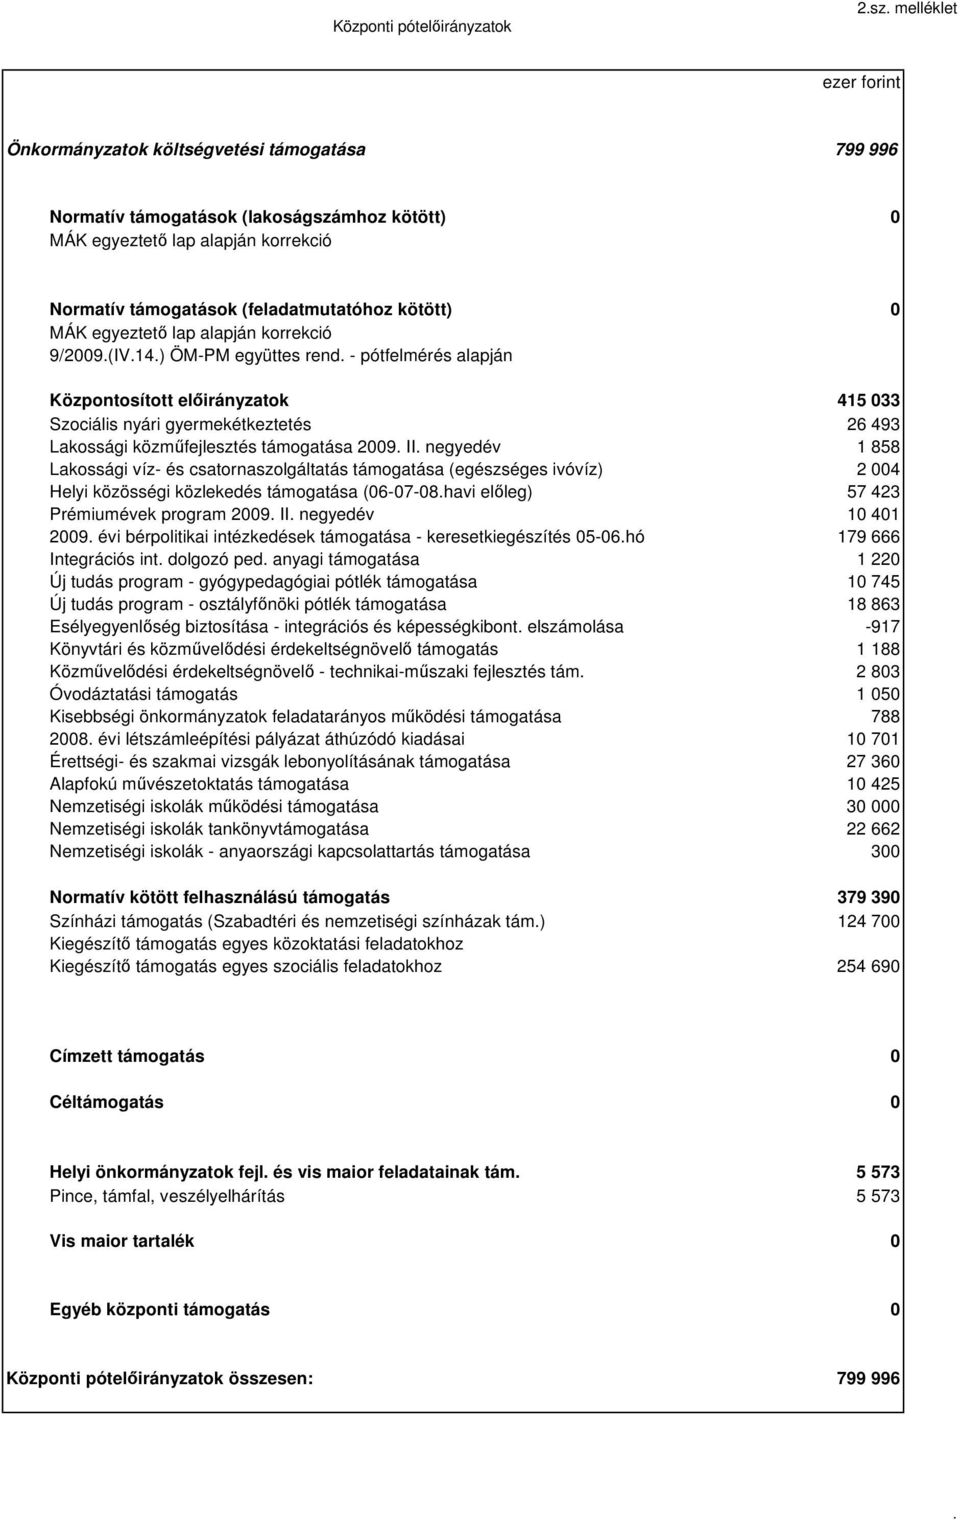 MÁK egyeztet lap alapján korrekció 9/29.(IV.14.) ÖM-PM együttes rend.